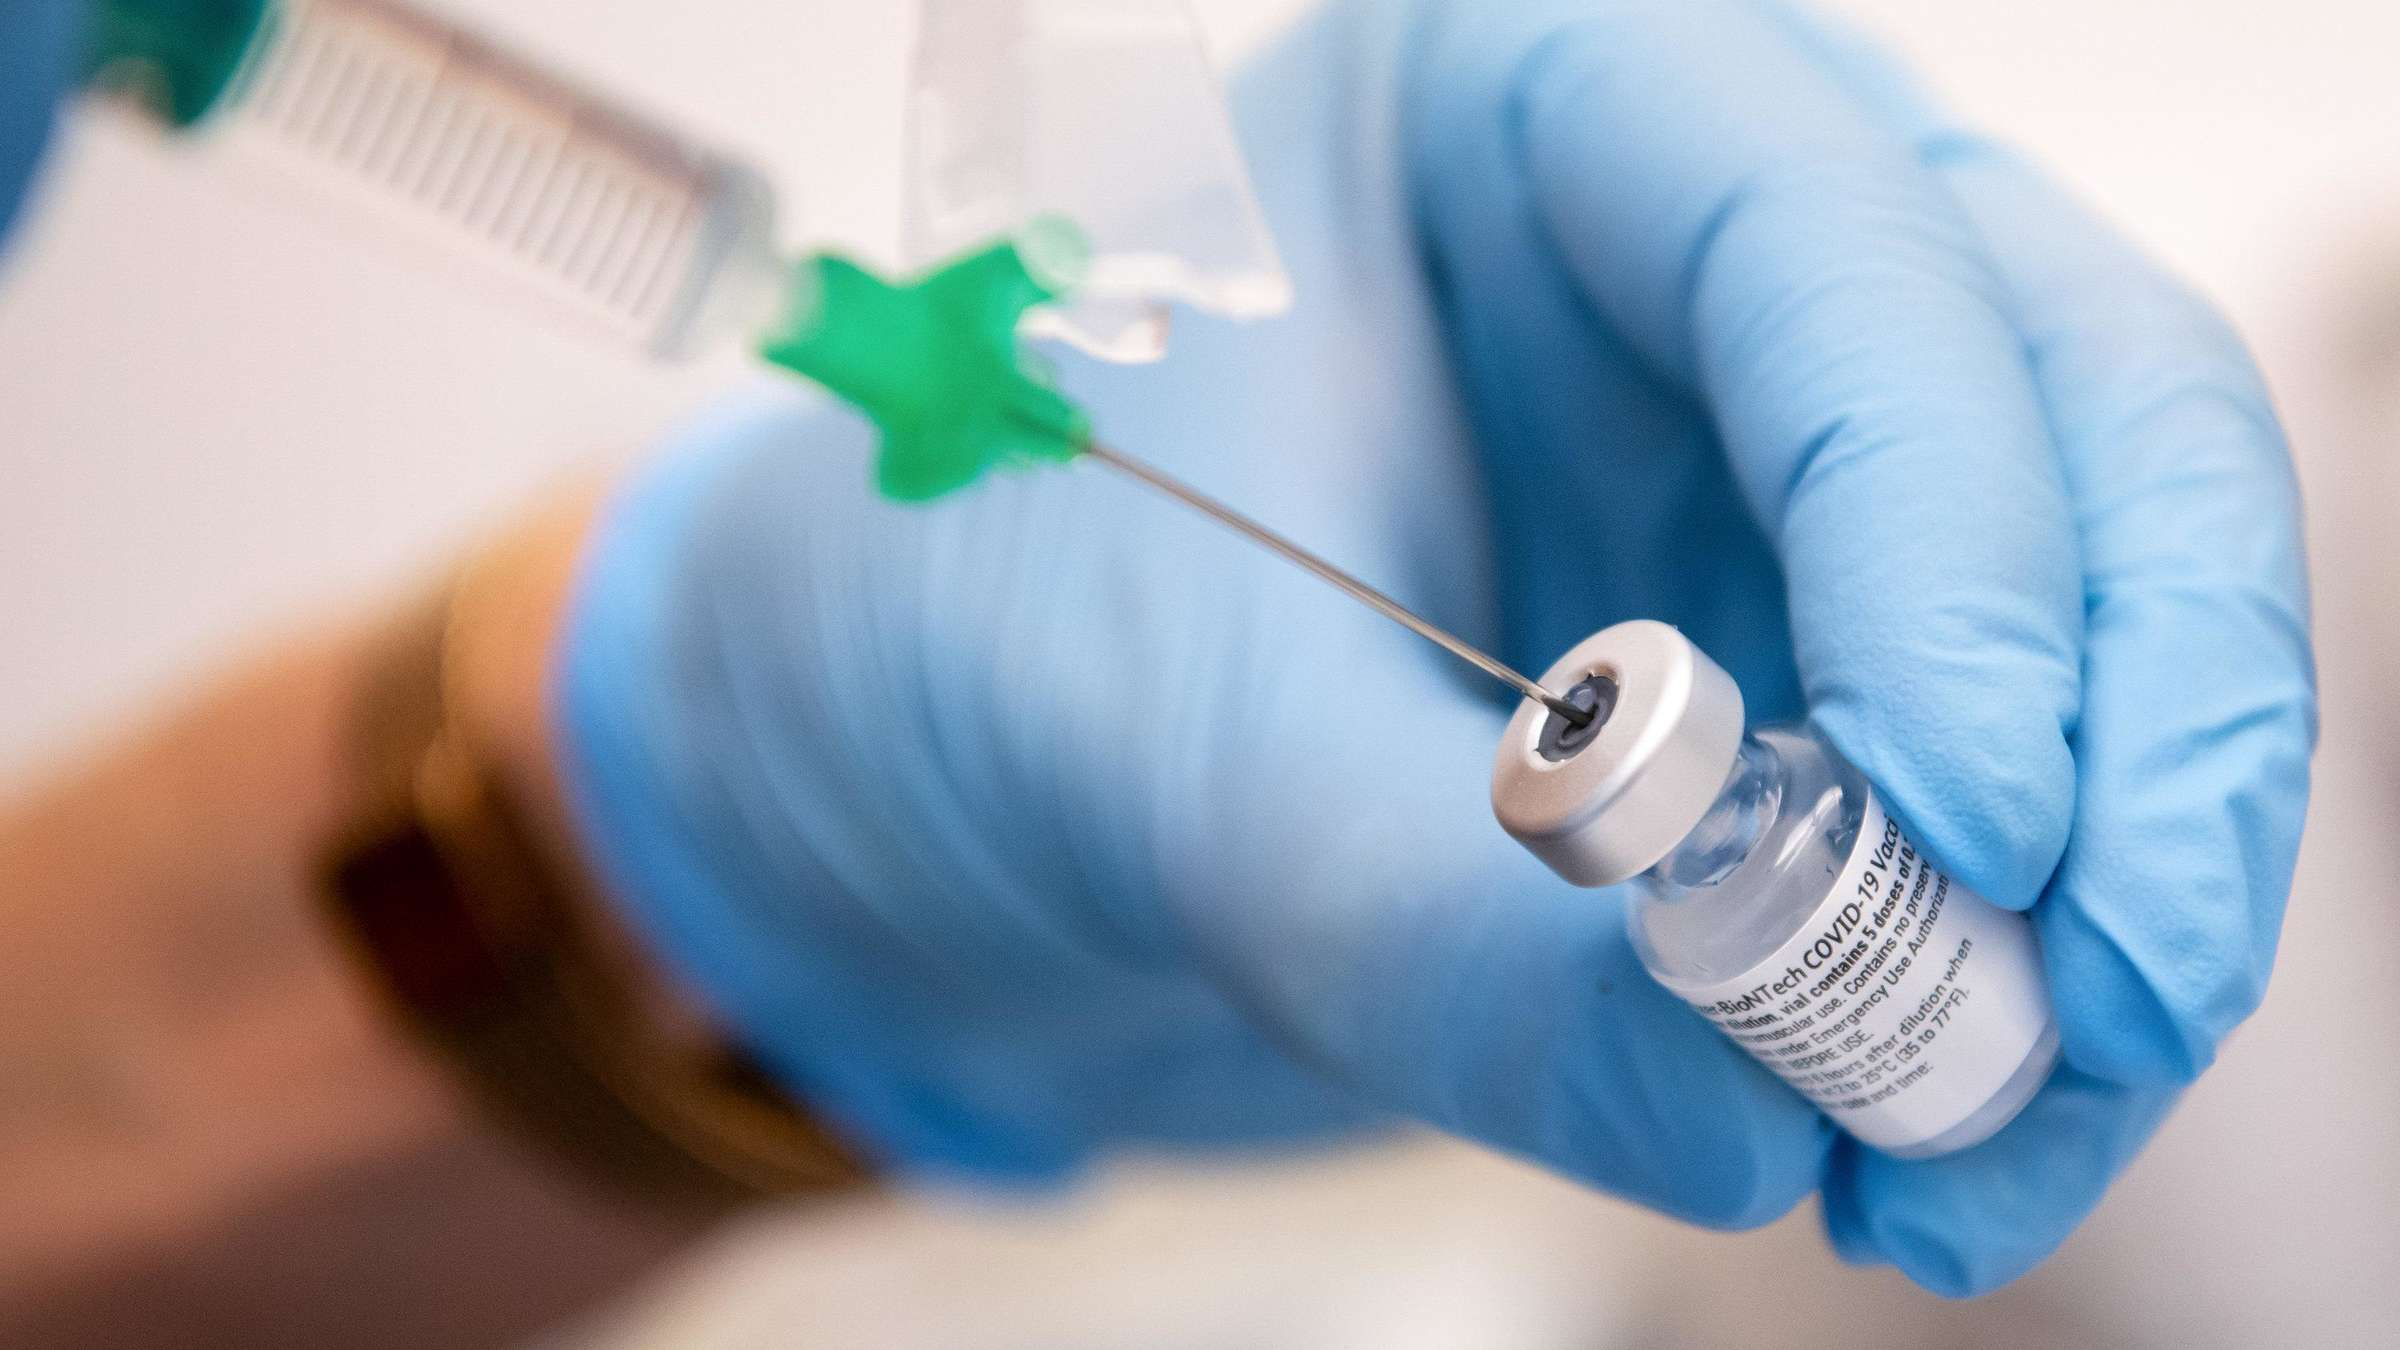 У жителя Японии впервые выявили возможный побочный эффект после вакцины Pfizer